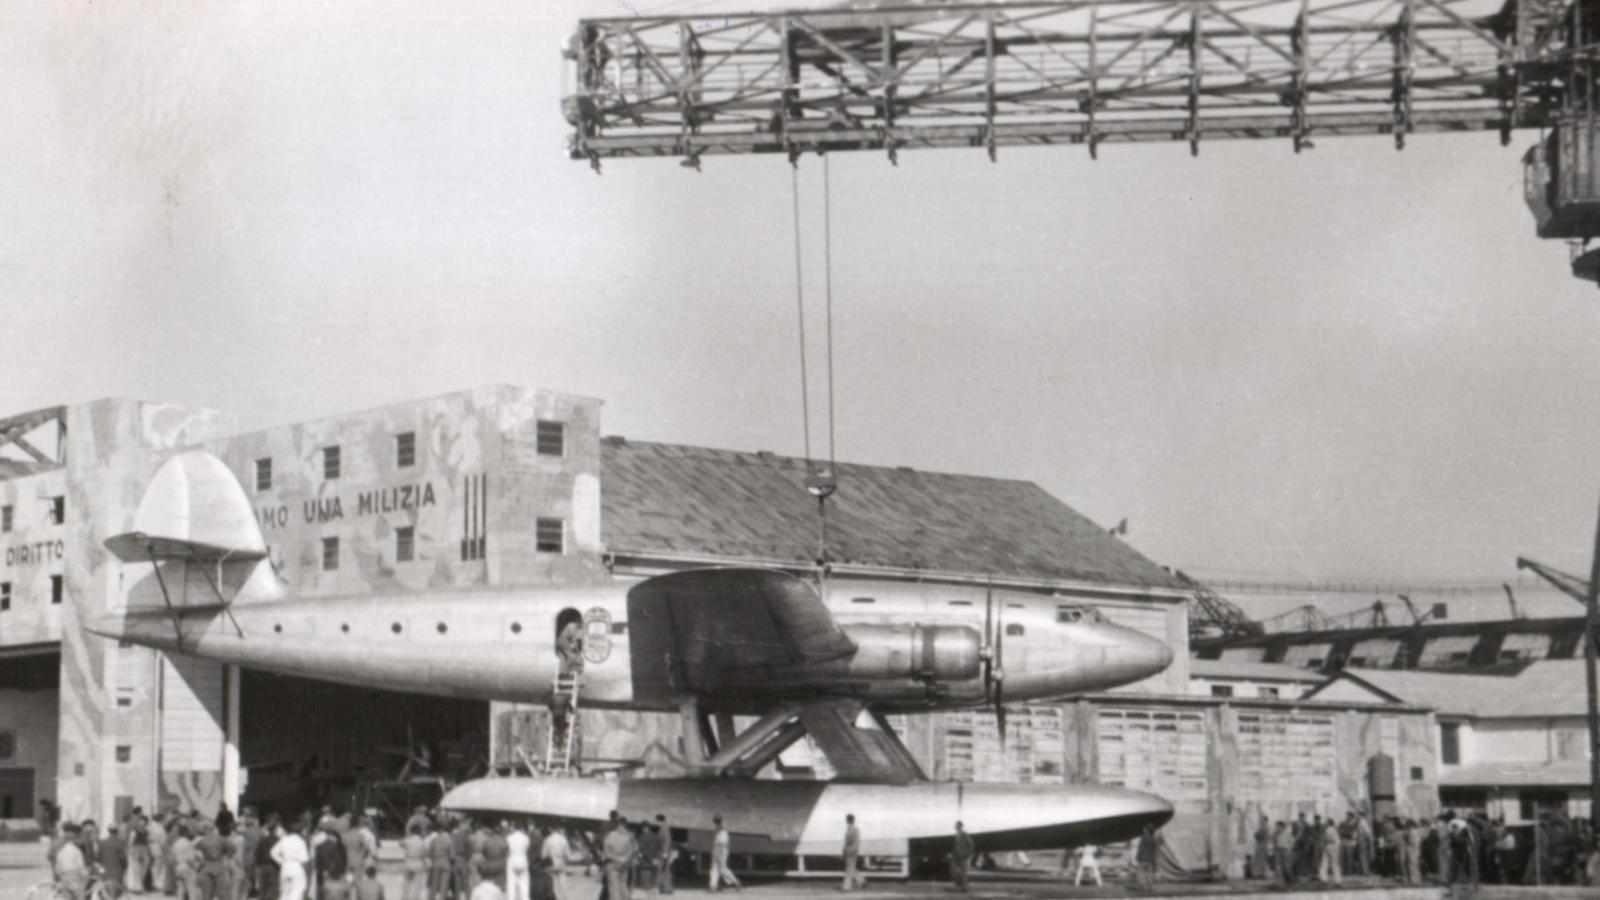 Prototipo velivolo davanti ad area industriale e cantieri navali